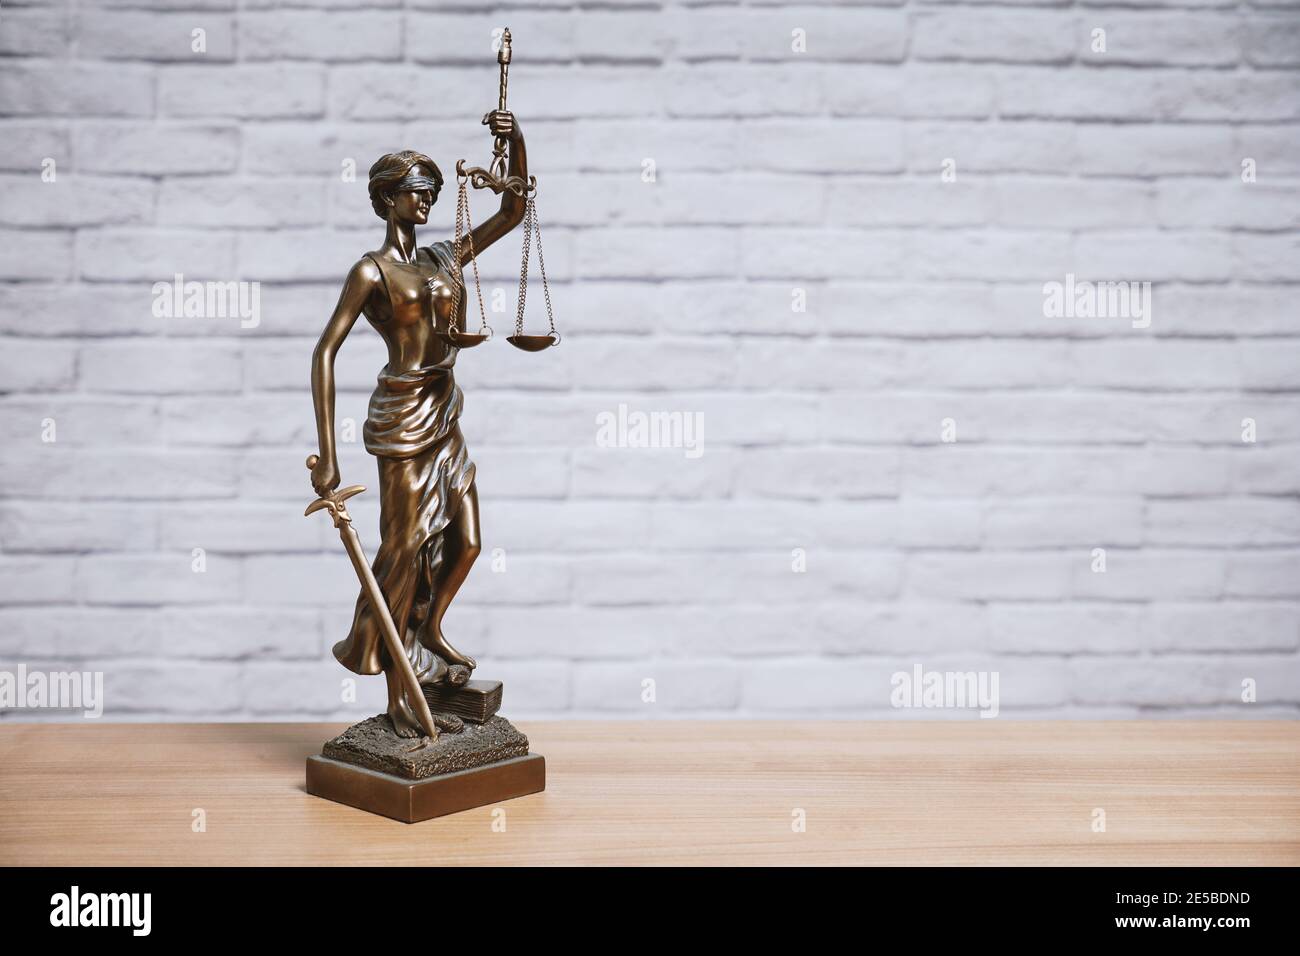 Lady Justice oder Justitia die Göttin der Gerechtigkeit Statue auf Schreibtisch - Rechtsgesetzgebung Konzept - Backsteinwand Hintergrund Mit Kopierbereich Stockfoto